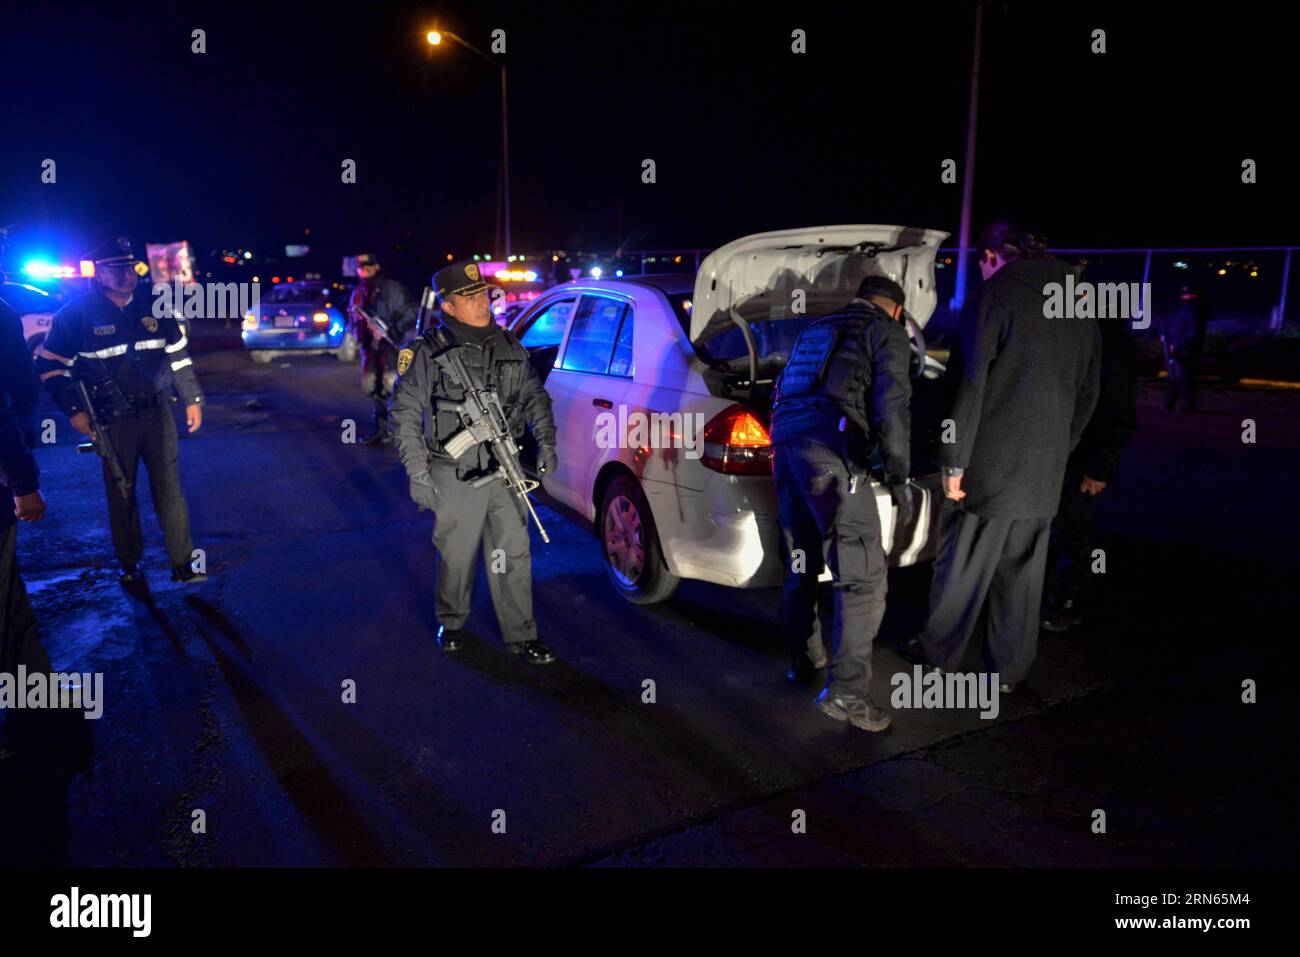 ALMOLOYA DE JUAREZ, les forces de sécurité publique de l'État de Mexico inspectent un véhicule lors d'une opération de perquisition près de l'Altiplano prision, à Almoloya de Juarez, État de Mexico, Mexique. Le roi du cartel de la drogue Joaquin El Chapo Guzman, chef du cartel de la drogue de Sinaloa, a disparu samedi soir de la prison de haute sécurité Altiplano à l'extérieur de Mexico, selon la Commission de sécurité nationale. (Zjy) MEXICO-ALMOLOYA DE JUAREZ-GUZMAN-ESCAPE MarioxVazquez/MVT PUBLICATIONxNOTxINxCHN ALMOLOYA de Juarez les forces de sécurité publique de l'État de Mexico inspectent un véhicule lors d'une opération de recherche près de Th Banque D'Images